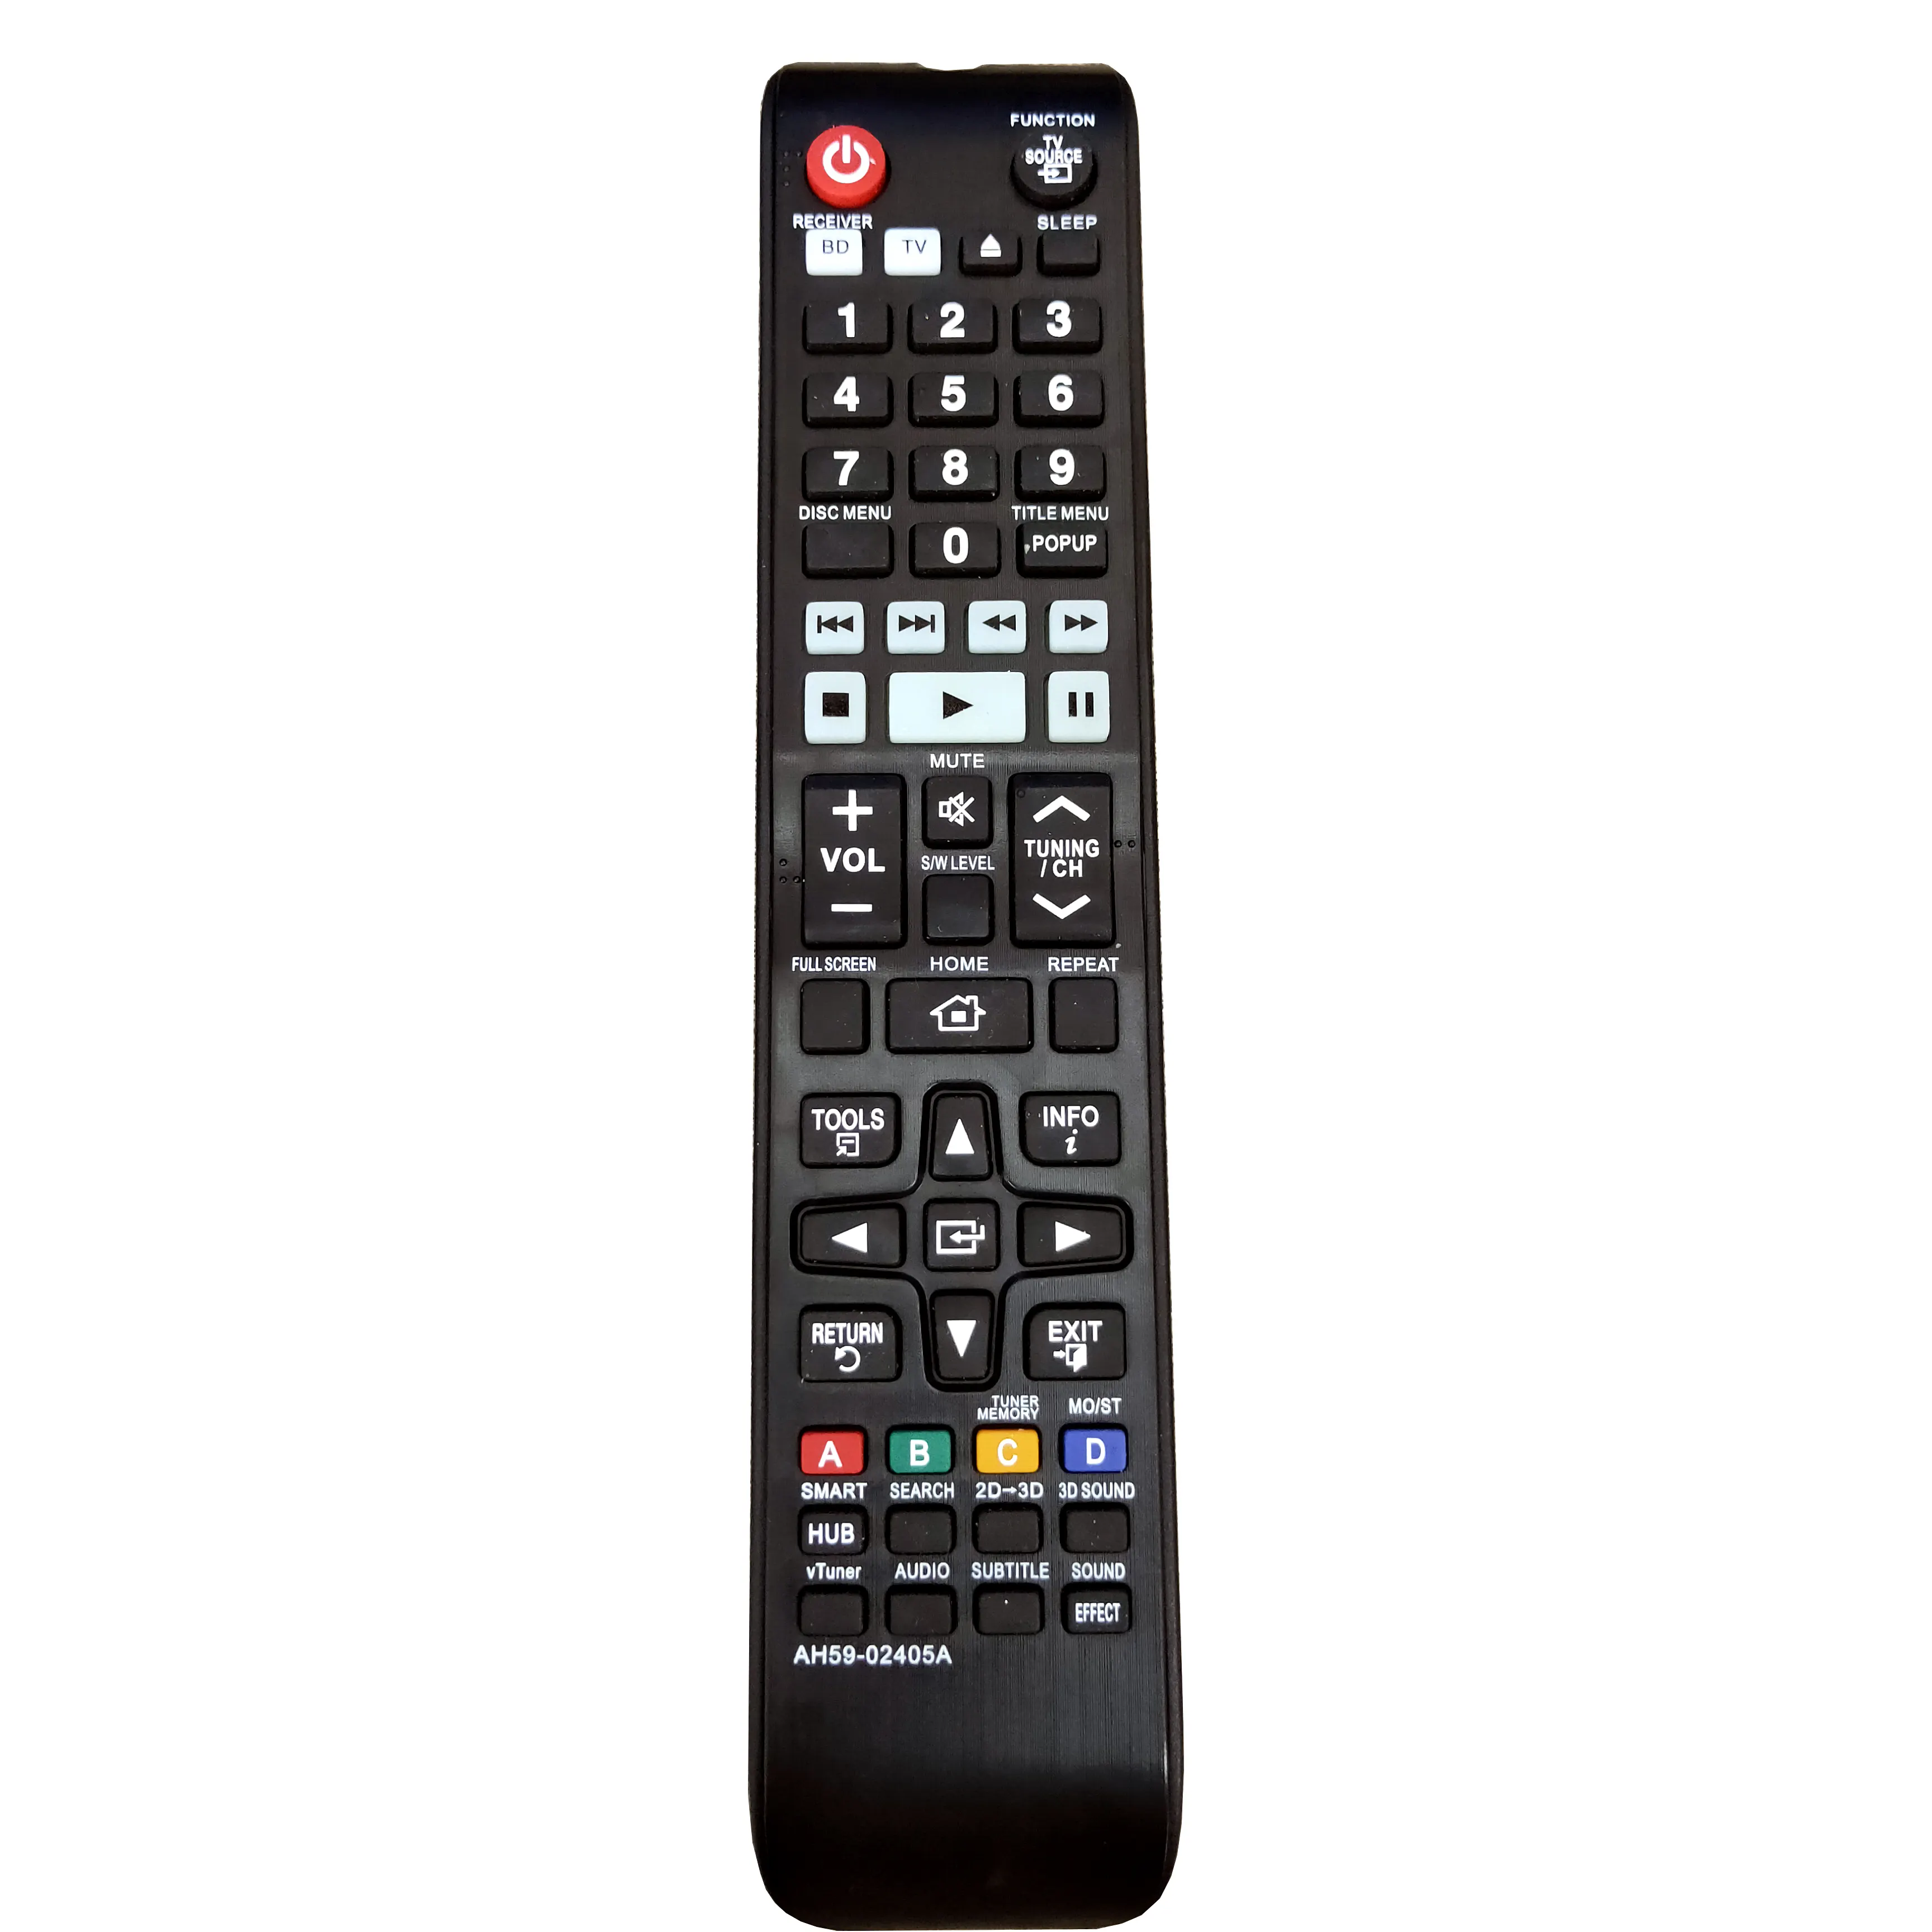 Reproductor de DVD para televisor Samsung, sistema de cine en casa compatible con Smart TV, BLU-RAY, AH59-02405A